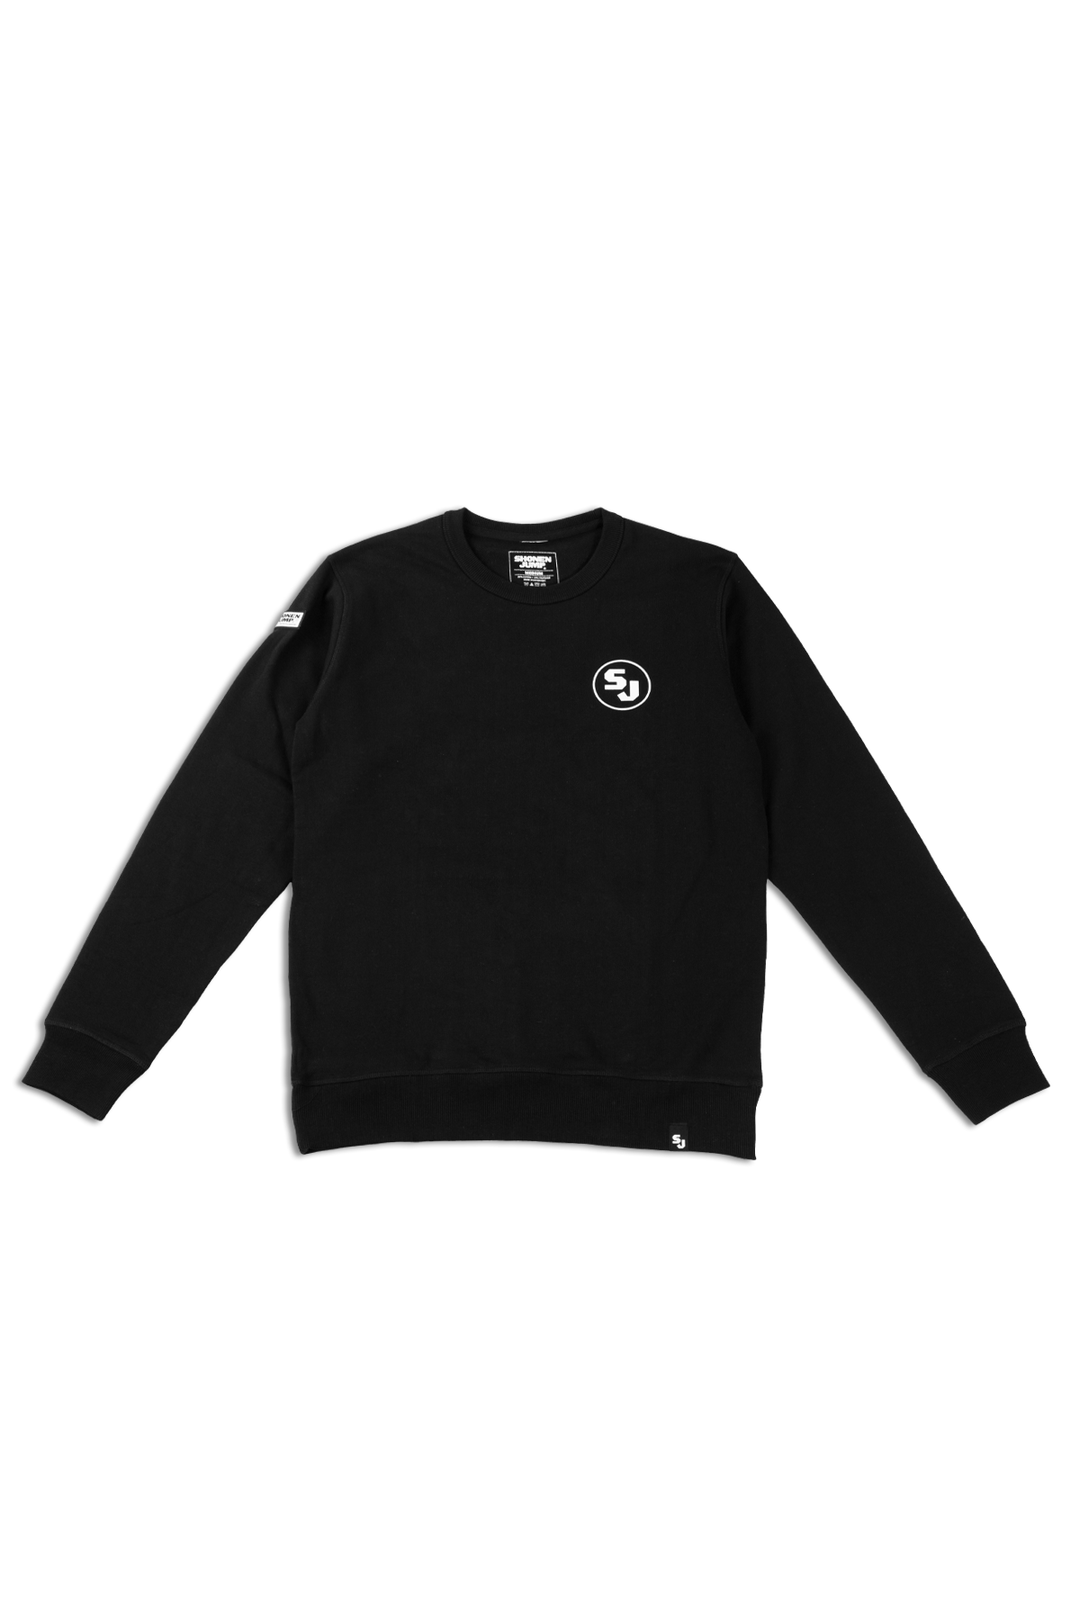 Shonen Jump Crew Neck Sweatshirt - Black